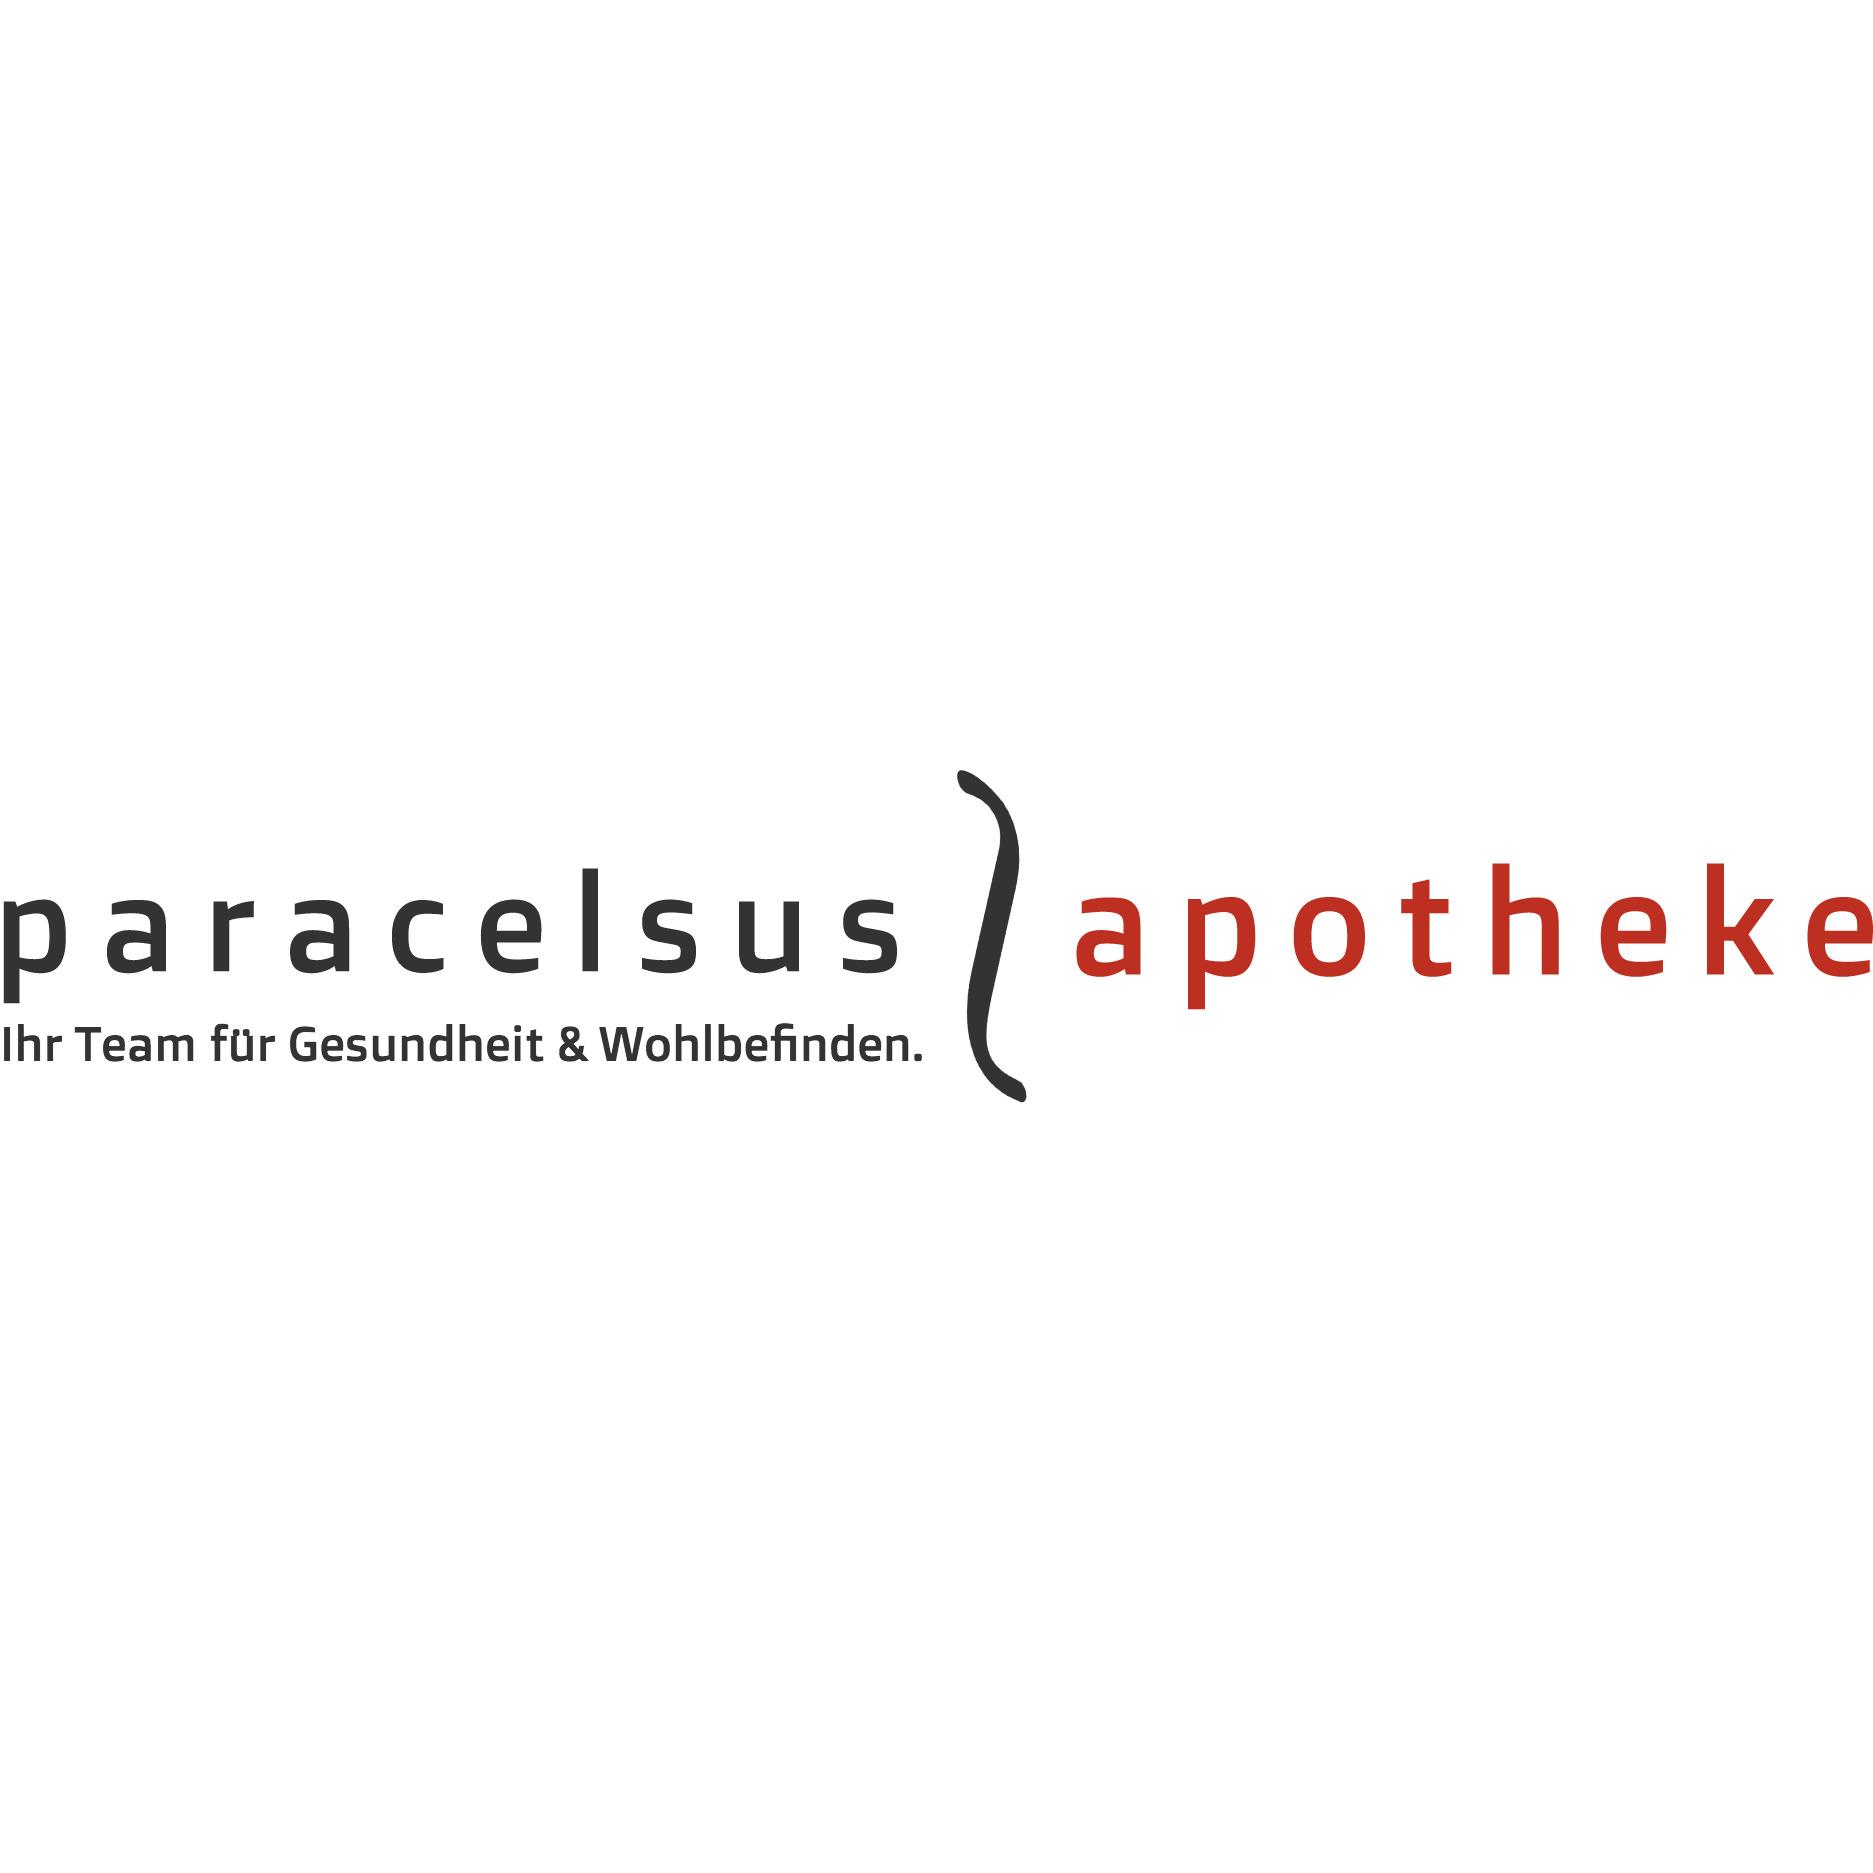 Paracelsus Apotheke Mag. pharm. Dr. Birgit Müller KG Logo